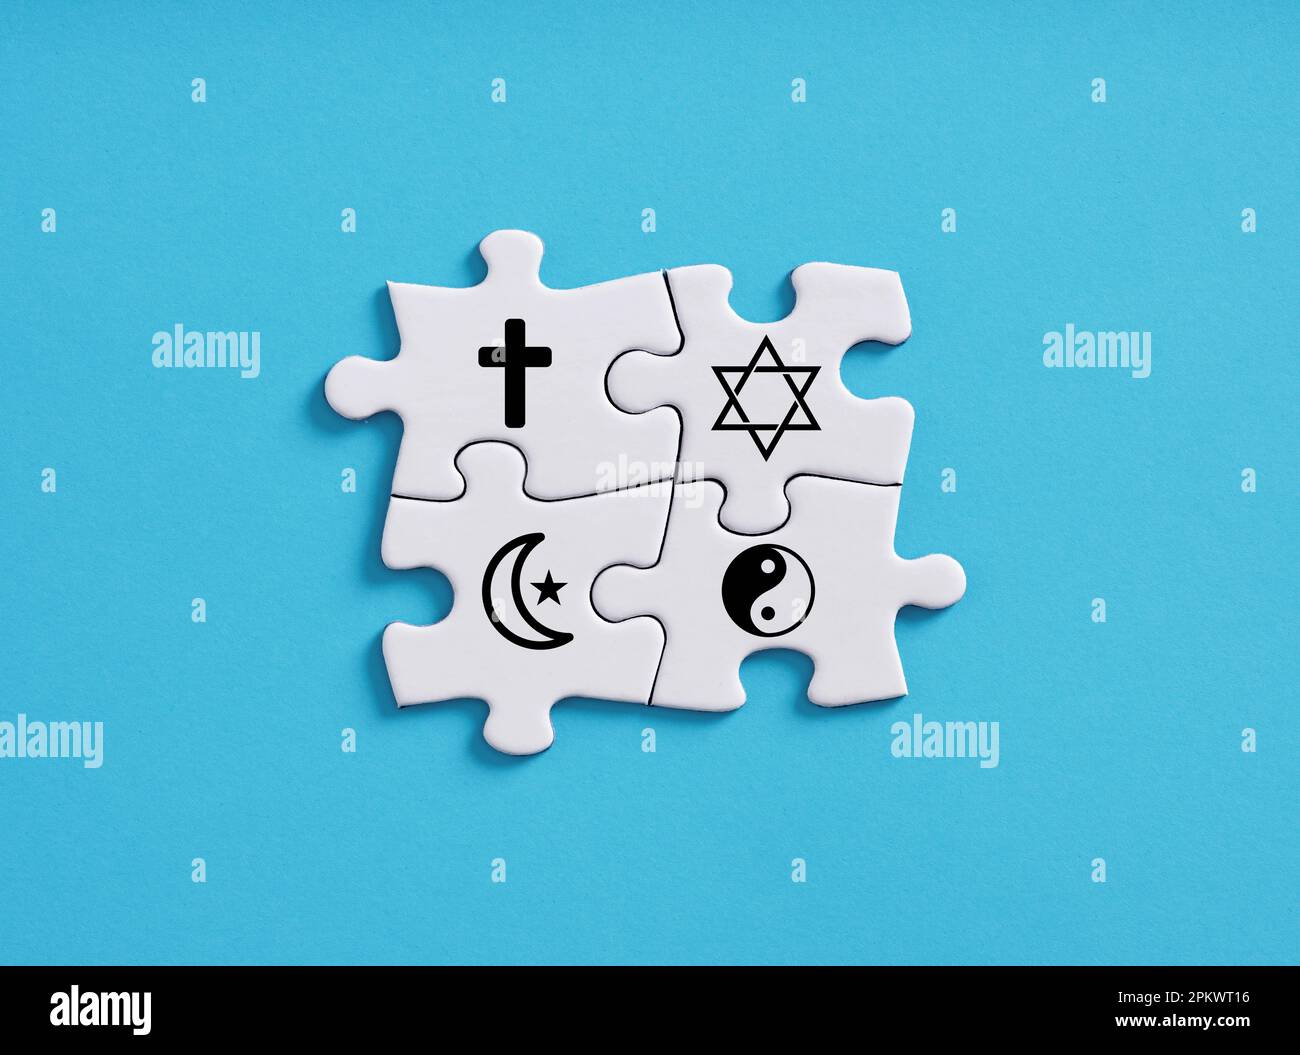 Einheit der Religionen. Glaube und religiöse Verbindung. Islam, Judentum, Christentum und Buddhismus ying Yang Symbole auf verbundenen Puzzleteilen. Stockfoto